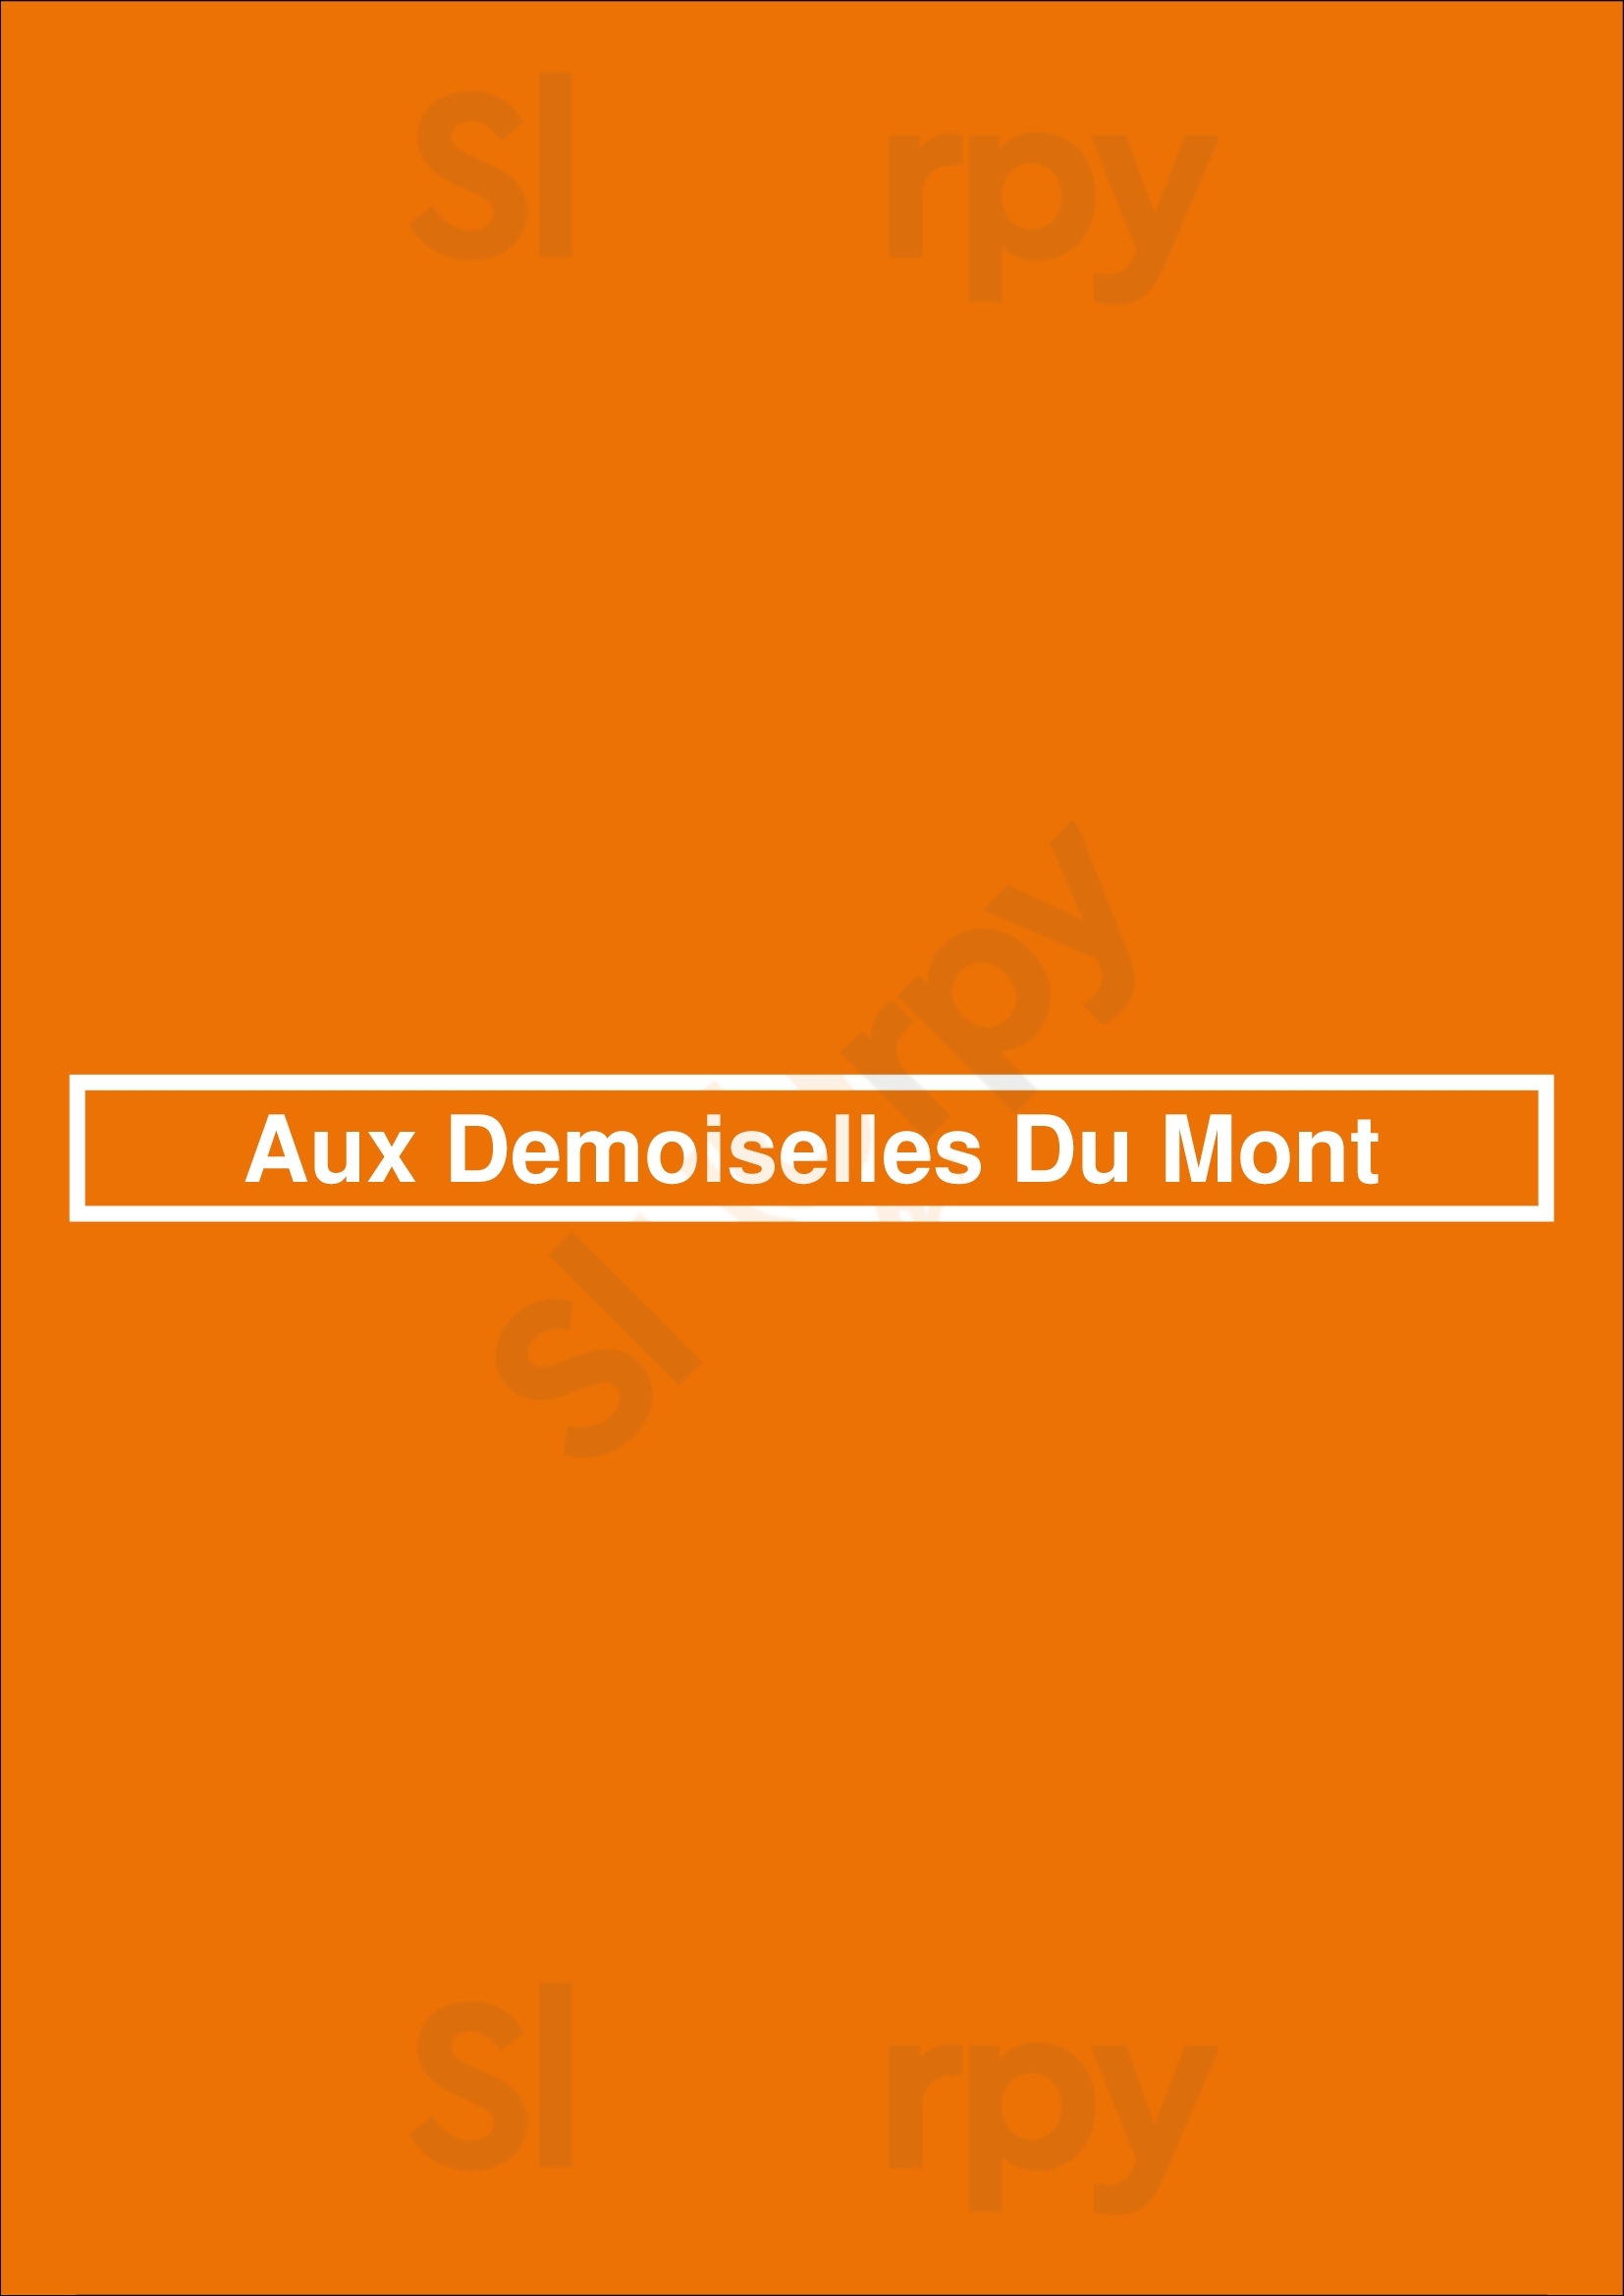 Aux Demoiselles Du Mont Marseille Menu - 1